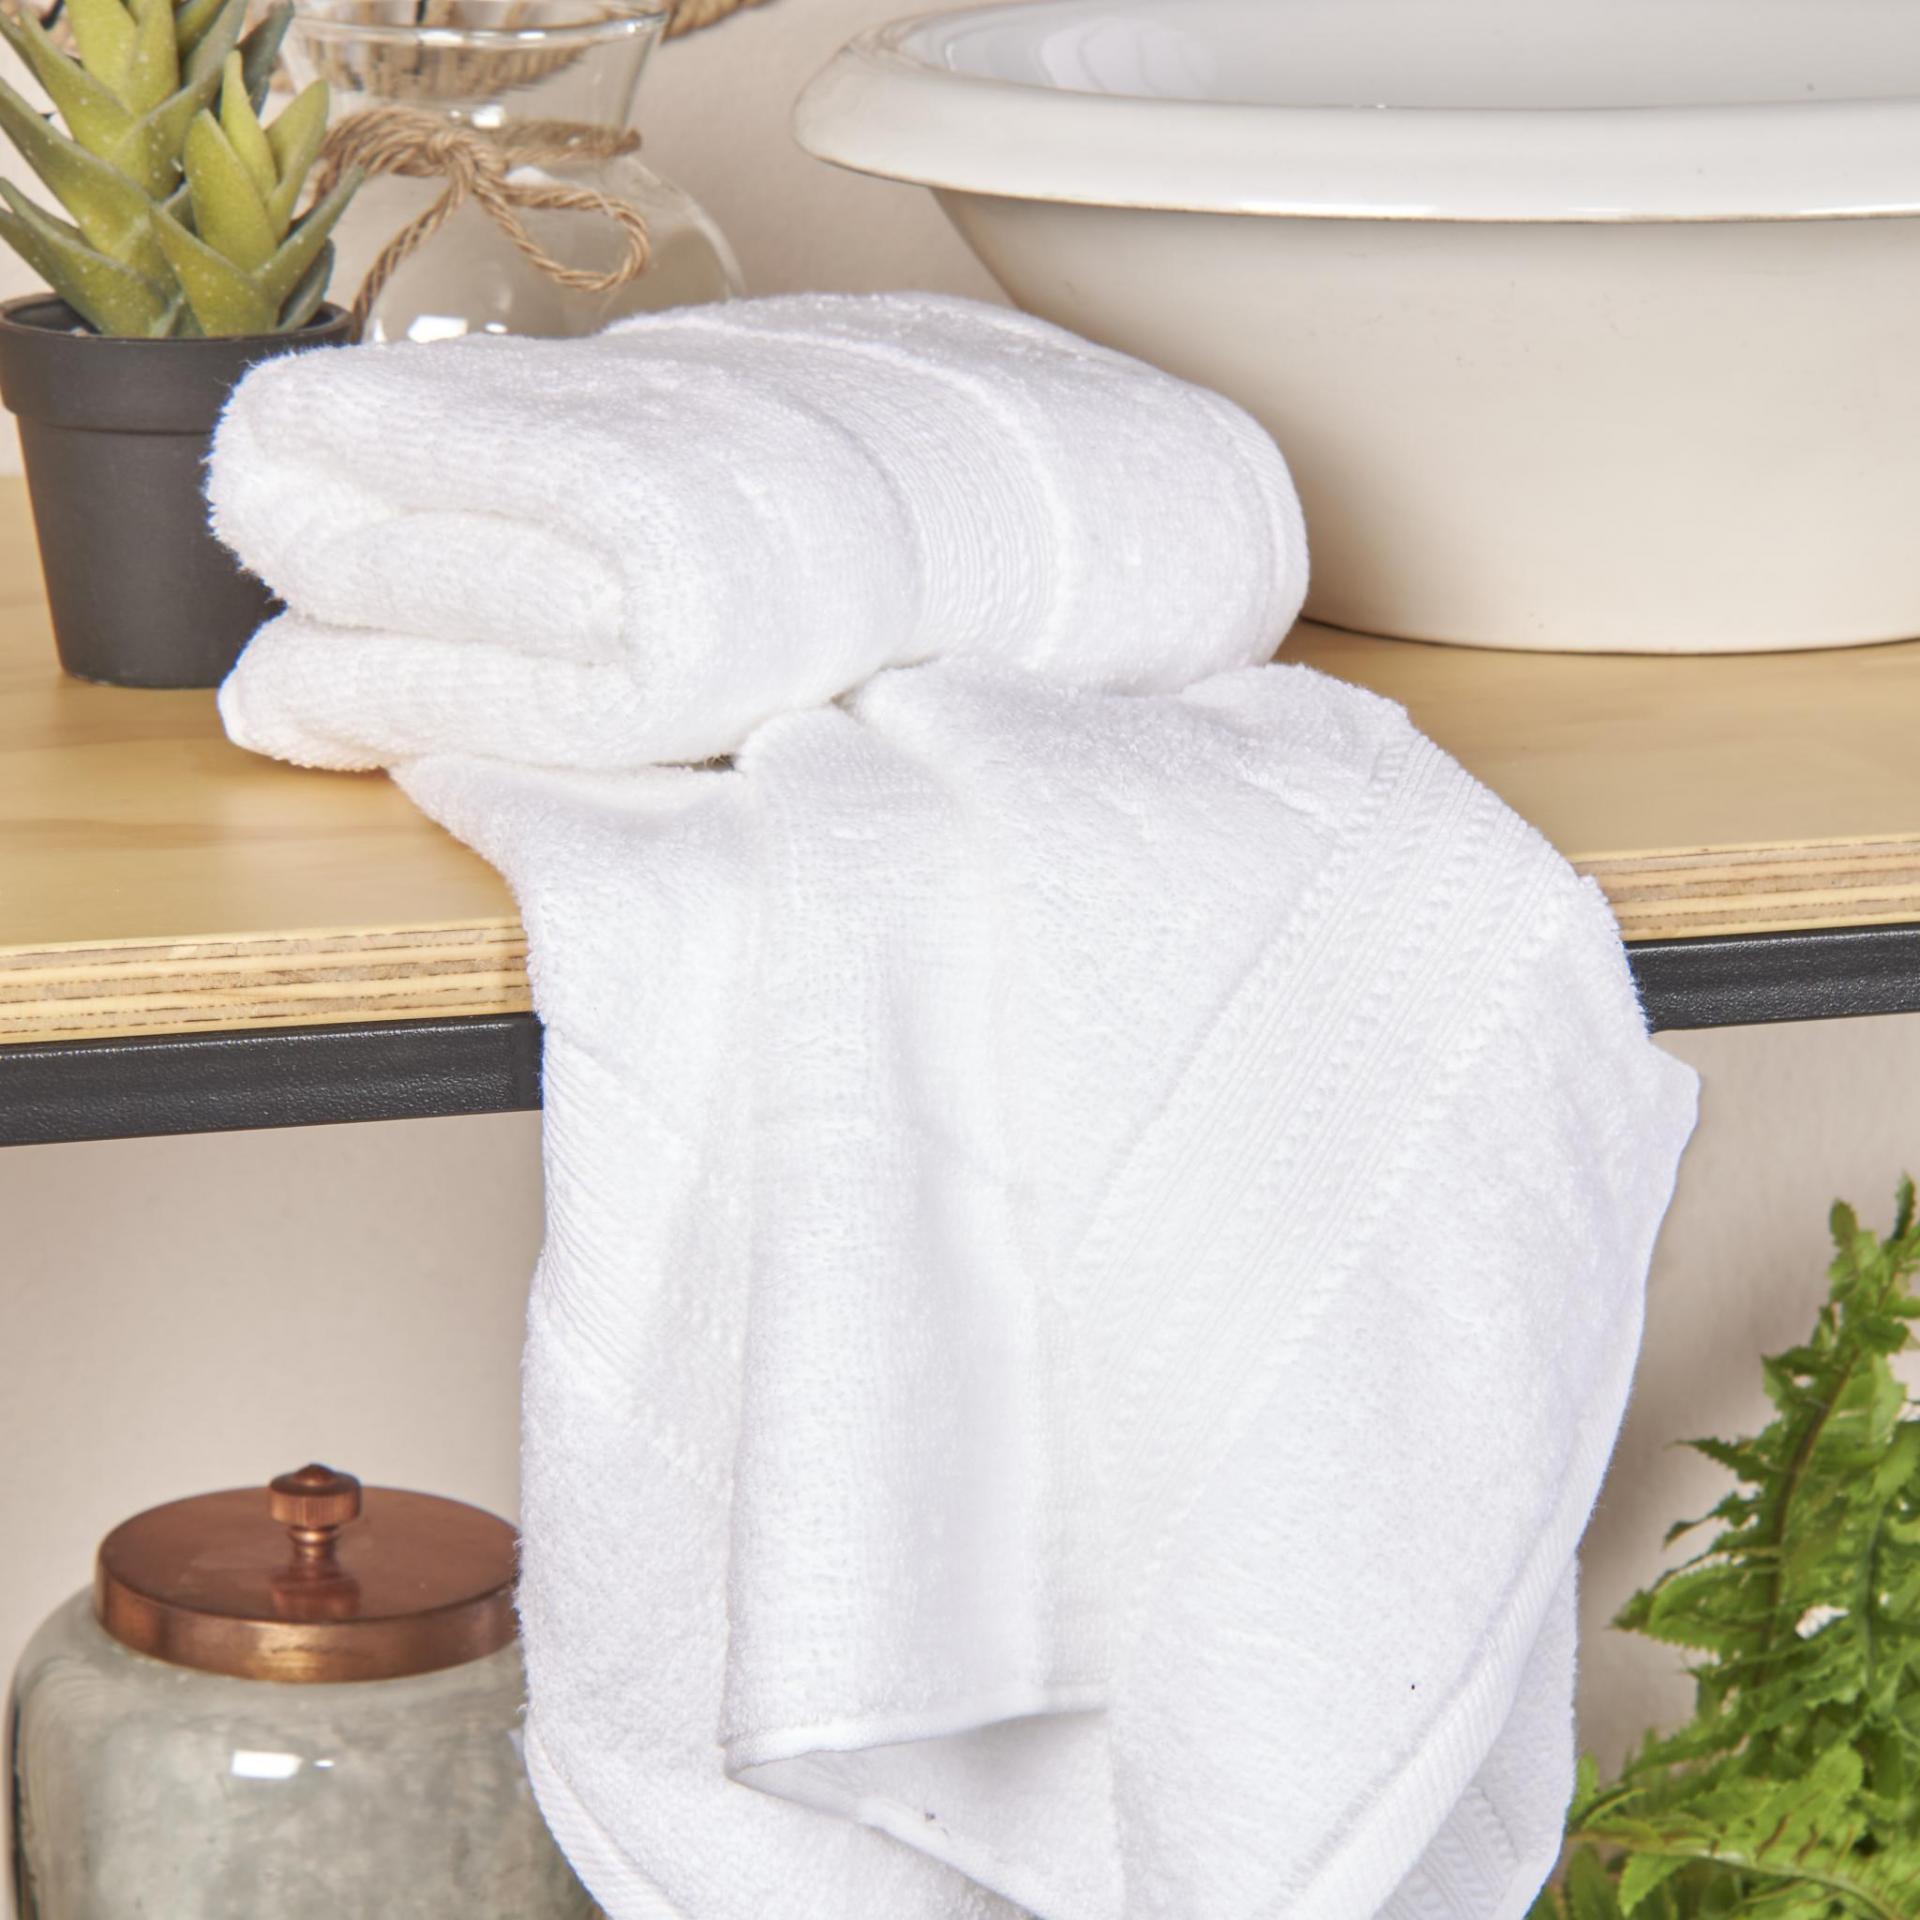 Marmaris Co. Juego de 3 toallas de bambú de lujo, toalla de mano y toalla  de cara, juego completo de toallas para baño (gris)